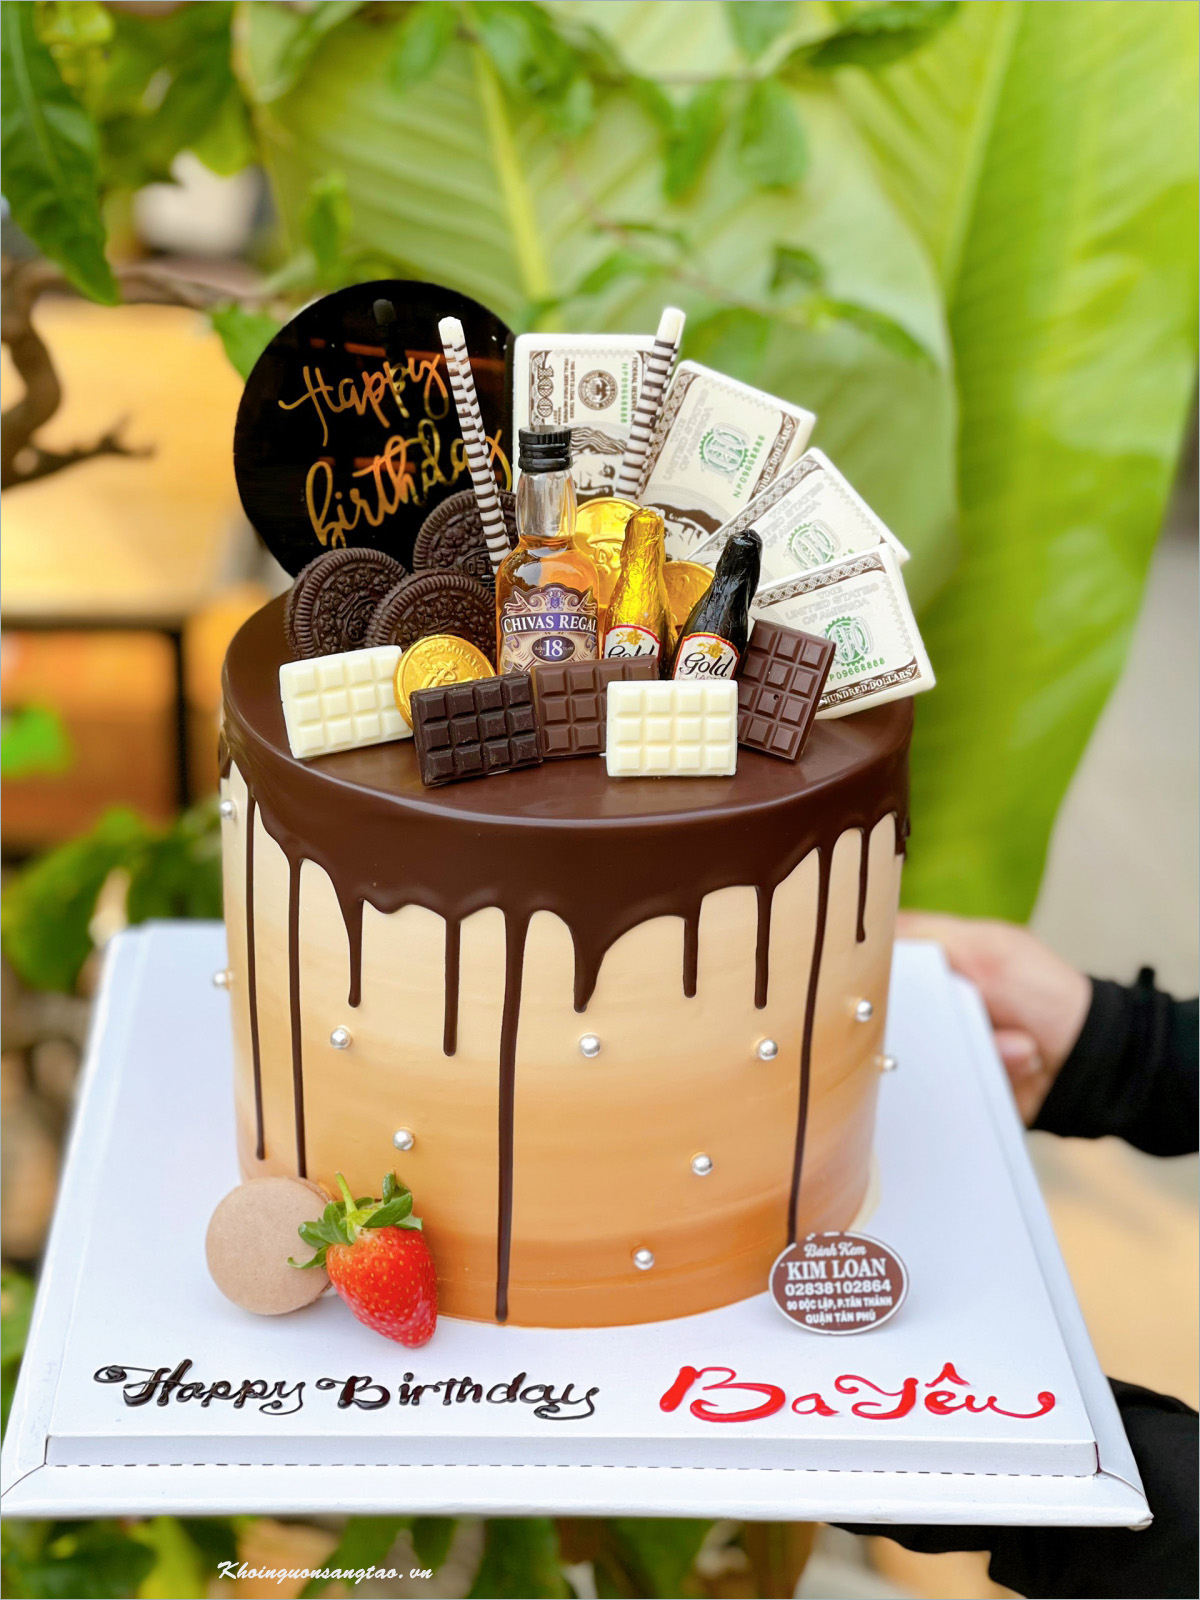 Bánh kem sinh nhật socola hình bố già bên chai rượu vui vẻ mừng sinh nhật bố  yêu  Bánh Thiên Thần  Chuyên nhận đặt bánh sinh nhật theo mẫu